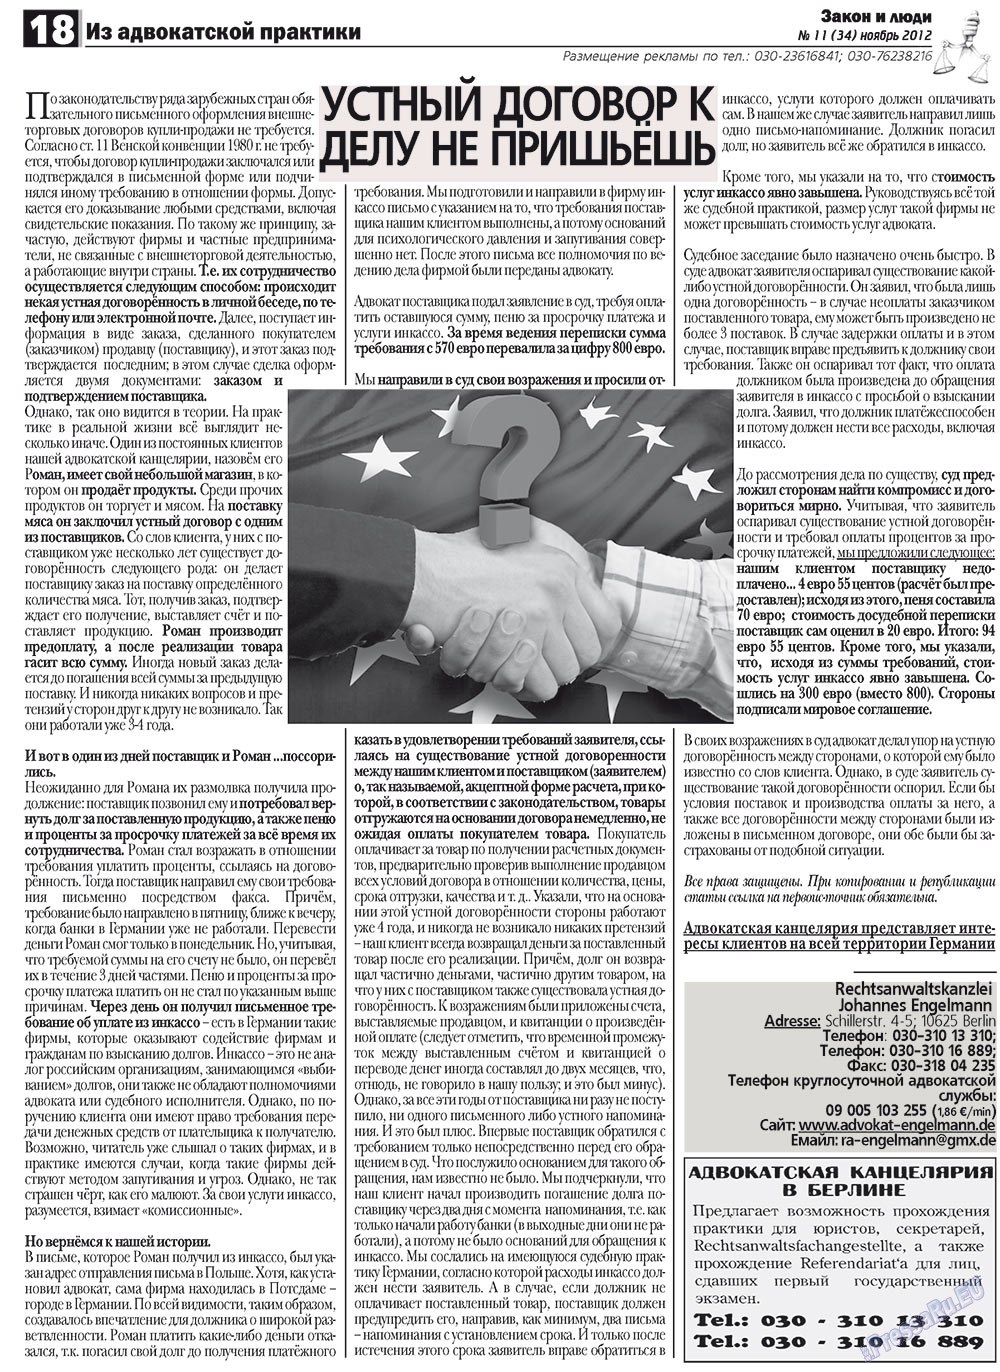 Закон и люди, газета. 2012 №11 стр.18